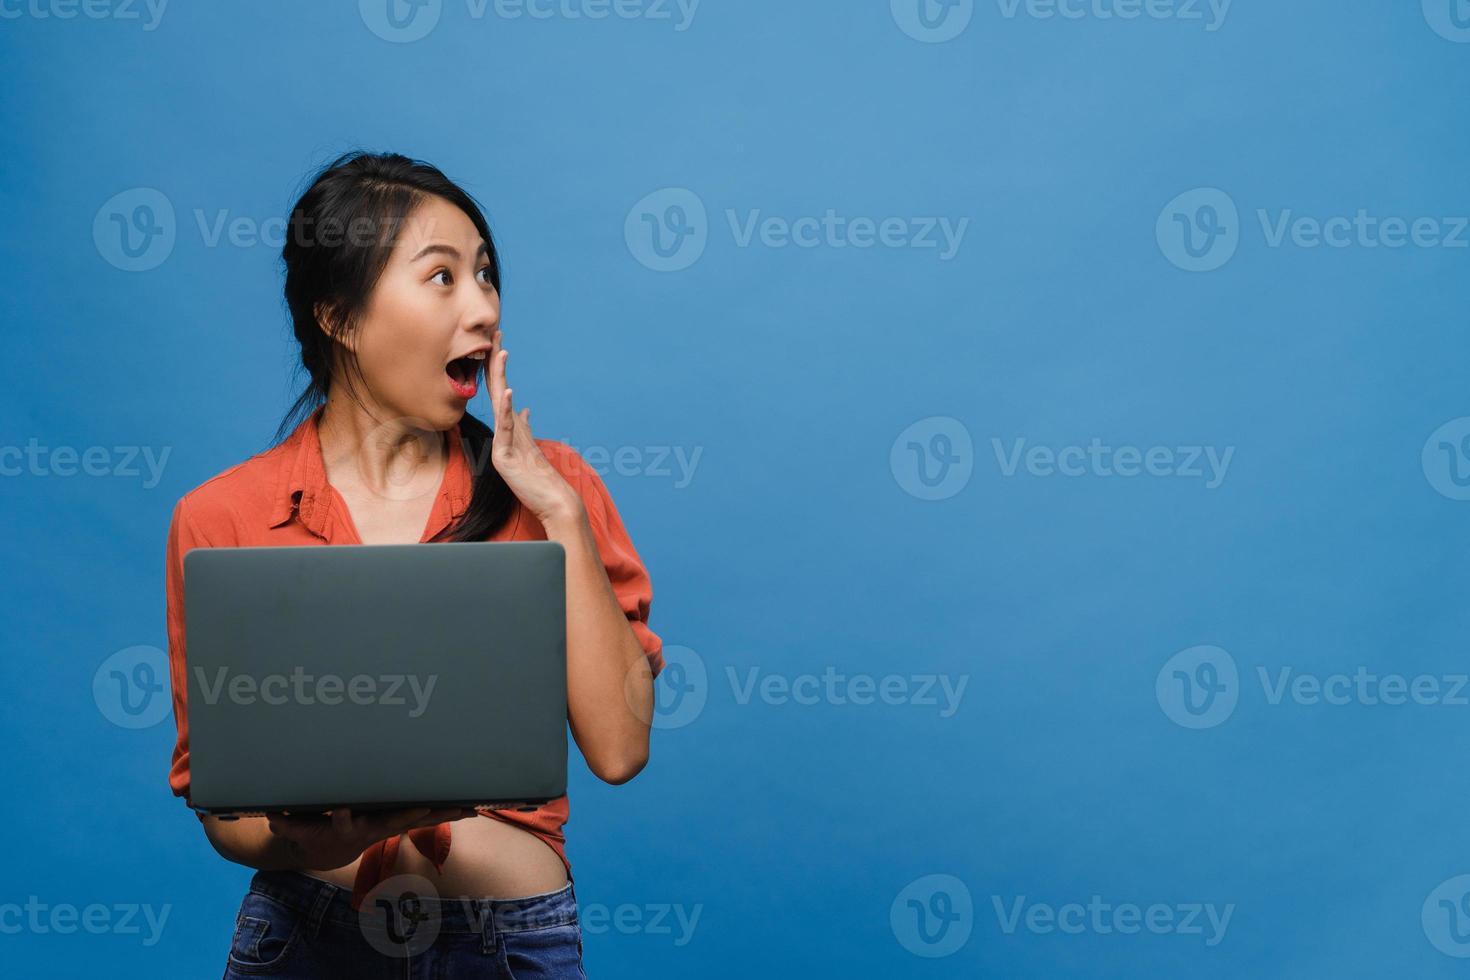 jeune femme asiatique utilisant un ordinateur portable avec une expression positive, sourit largement, vêtue de vêtements décontractés, se sentant heureuse et isolée sur fond bleu. heureuse adorable femme heureuse se réjouit du succès. photo